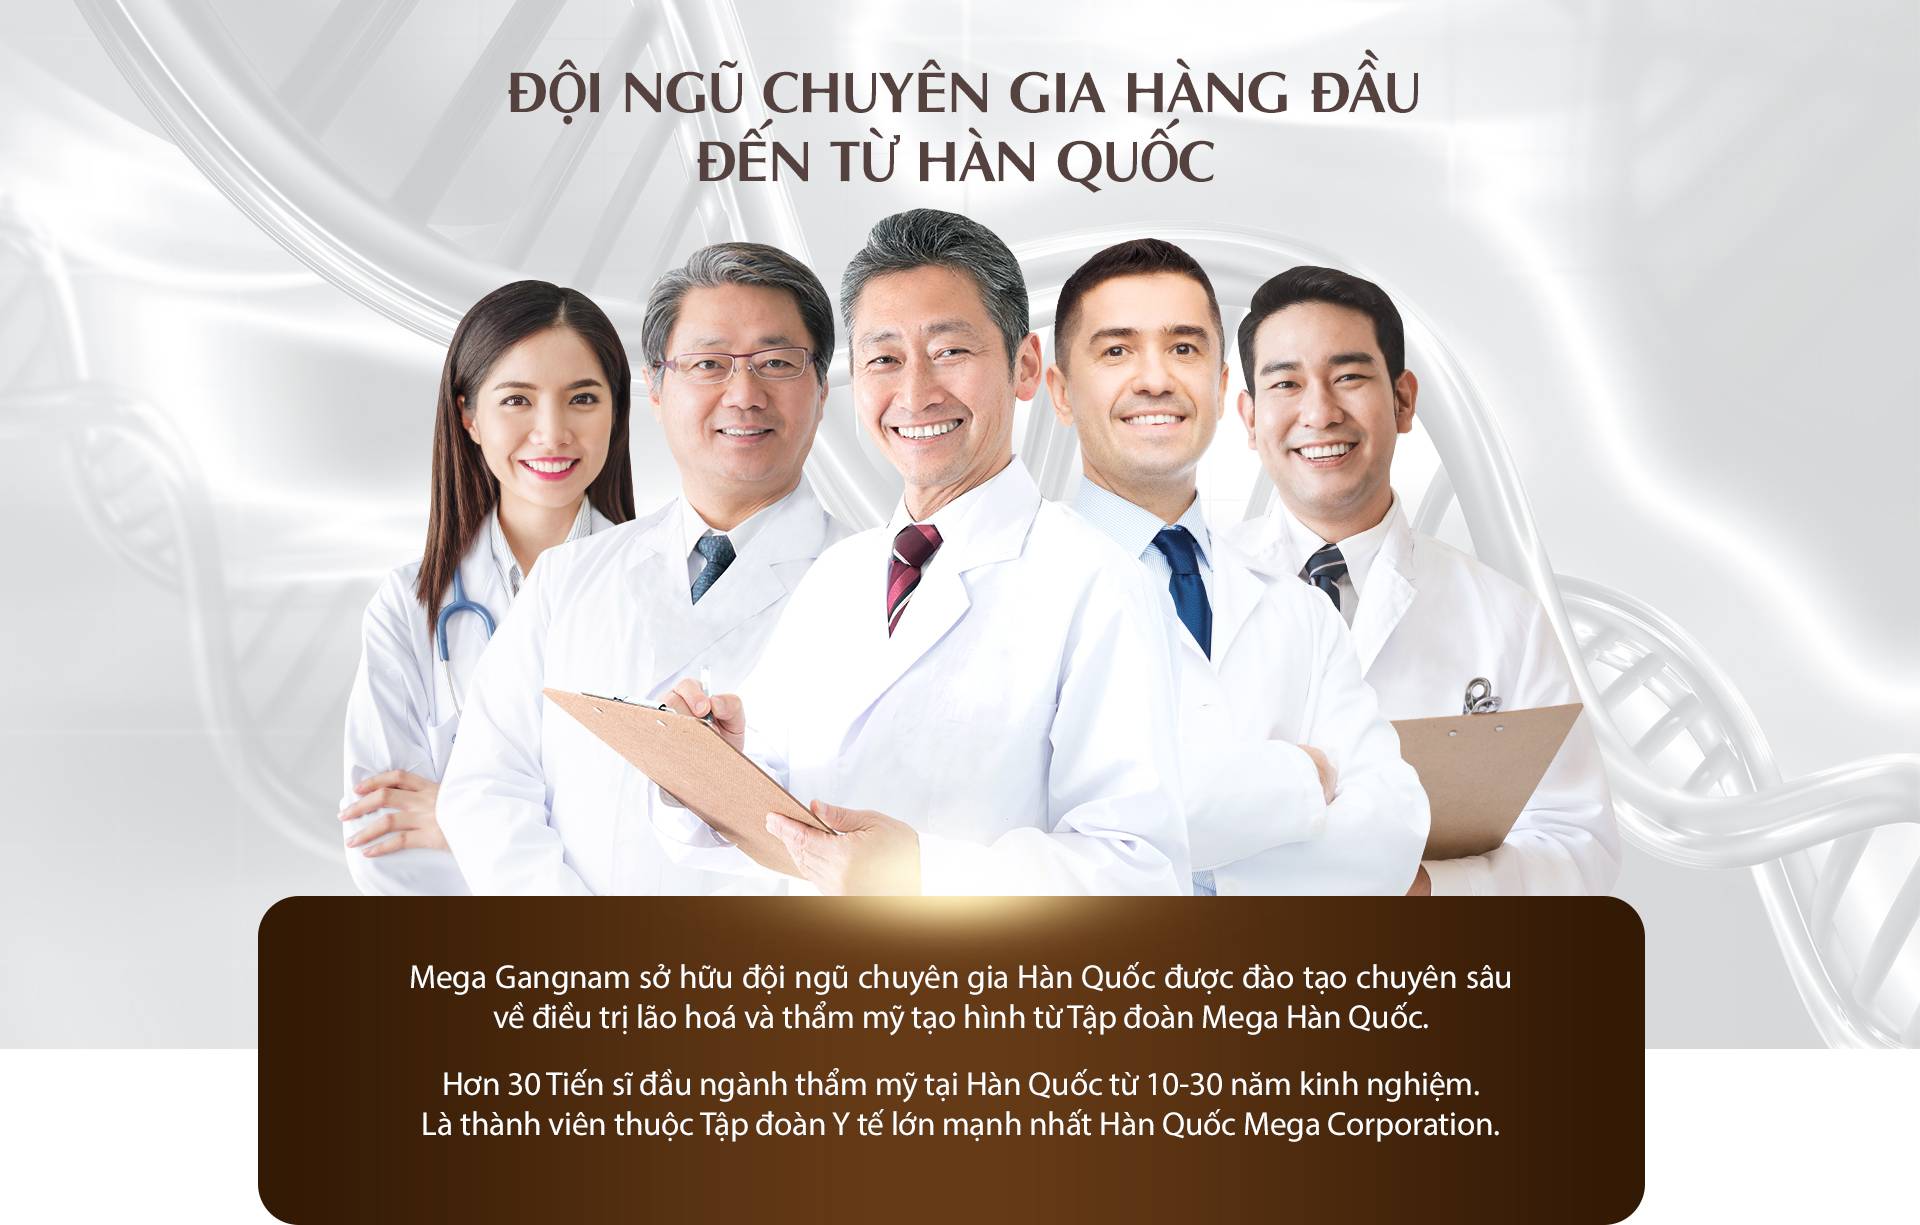 Đội ngũ bác sĩ và chuyên gia hàng đầu của Mega Gangnam